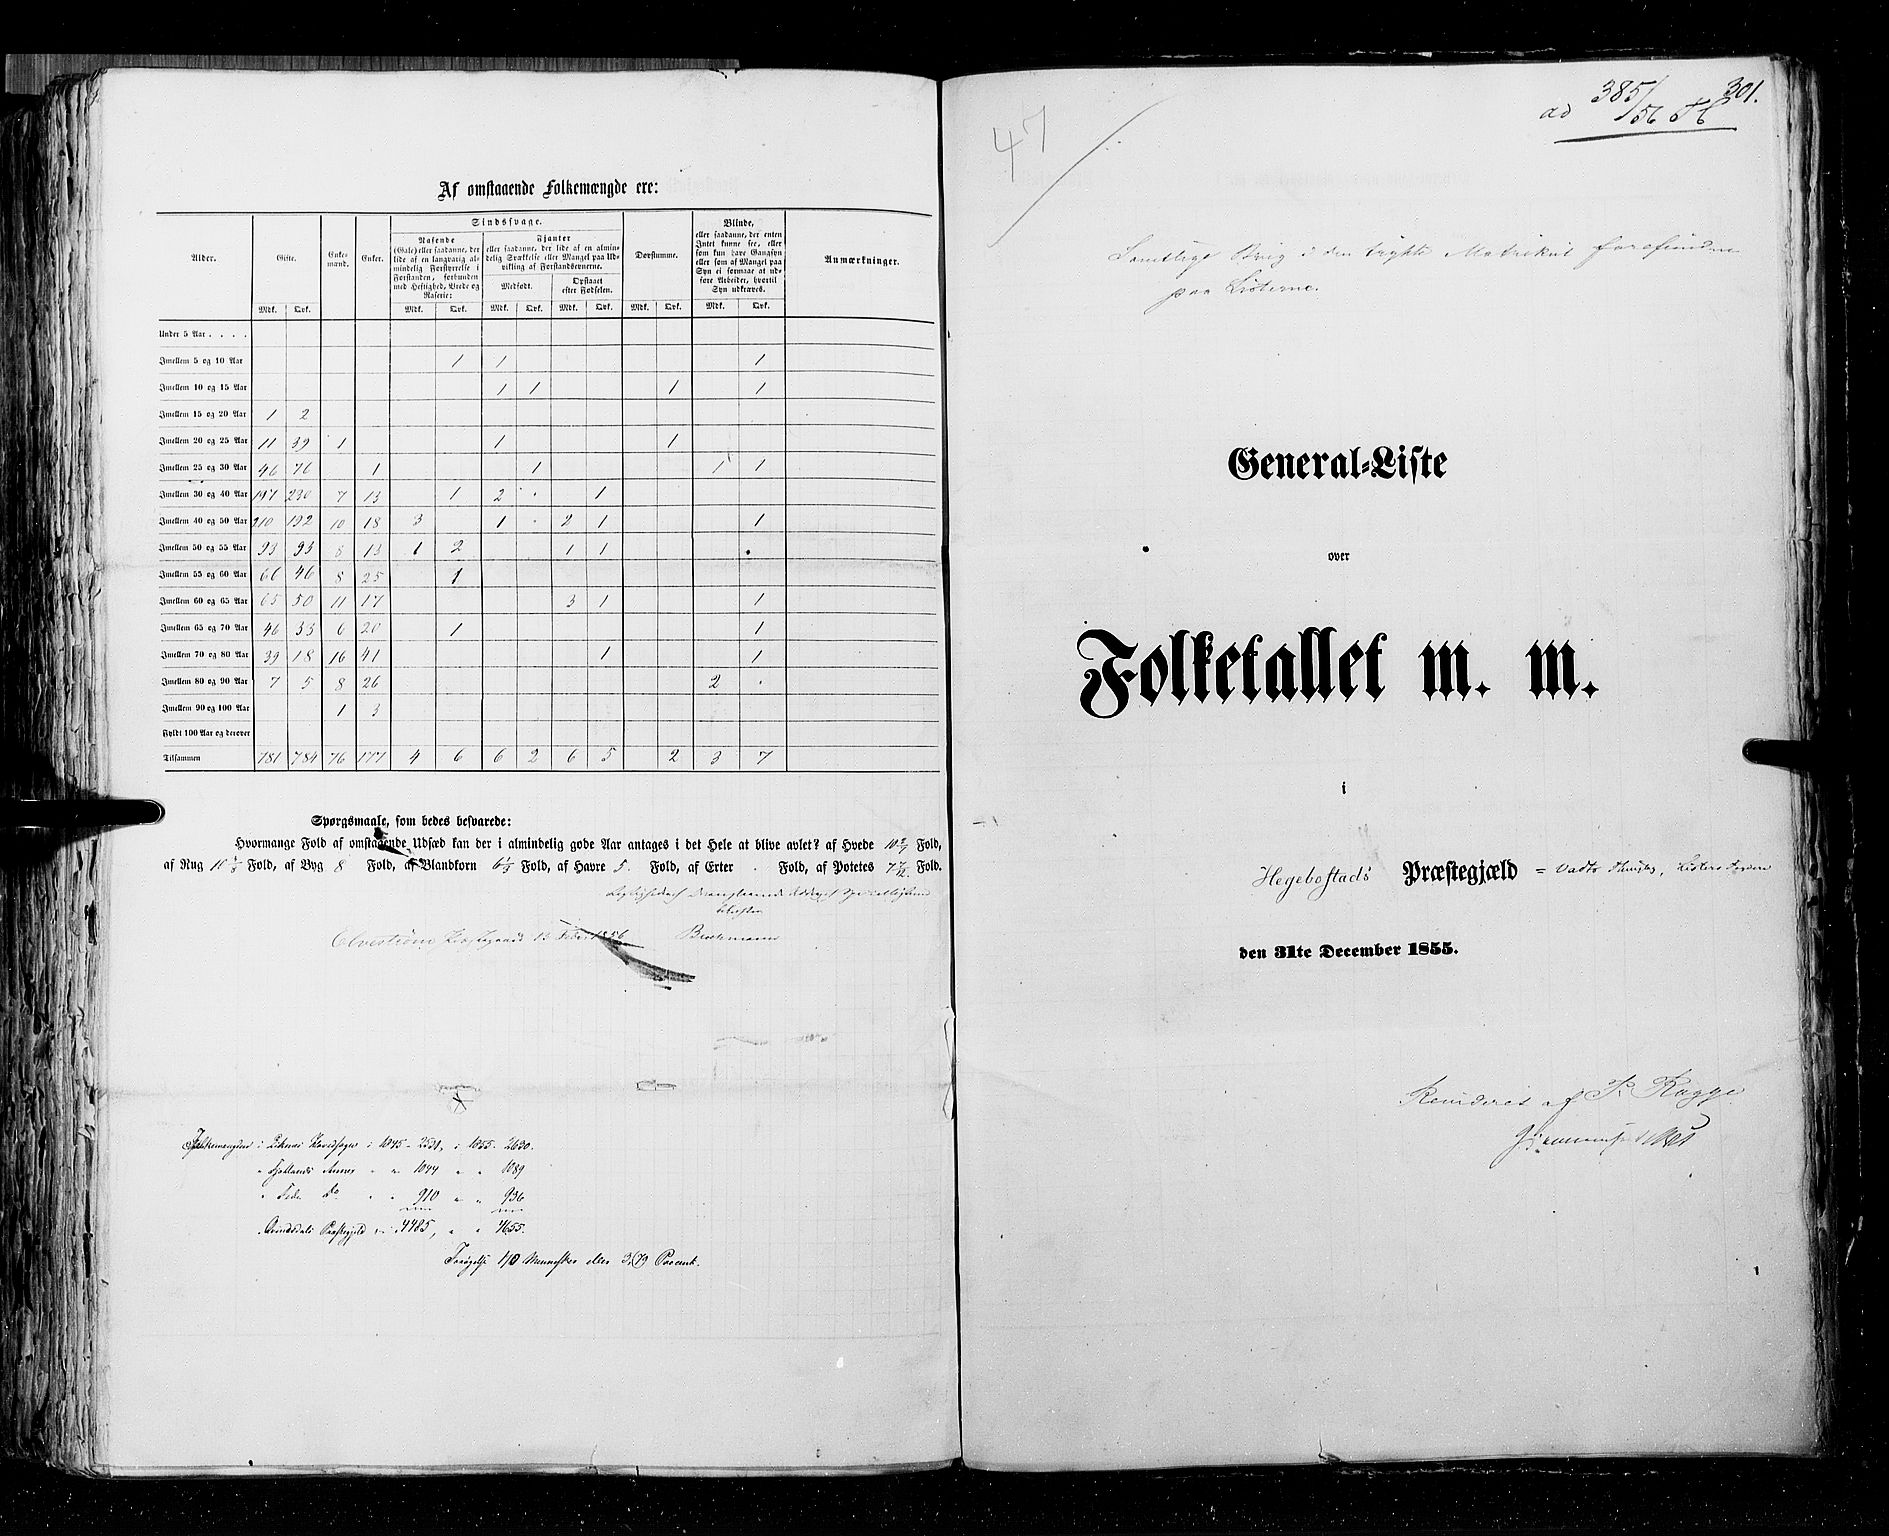 RA, Folketellingen 1855, bind 3: Bratsberg amt, Nedenes amt og Lister og Mandal amt, 1855, s. 301